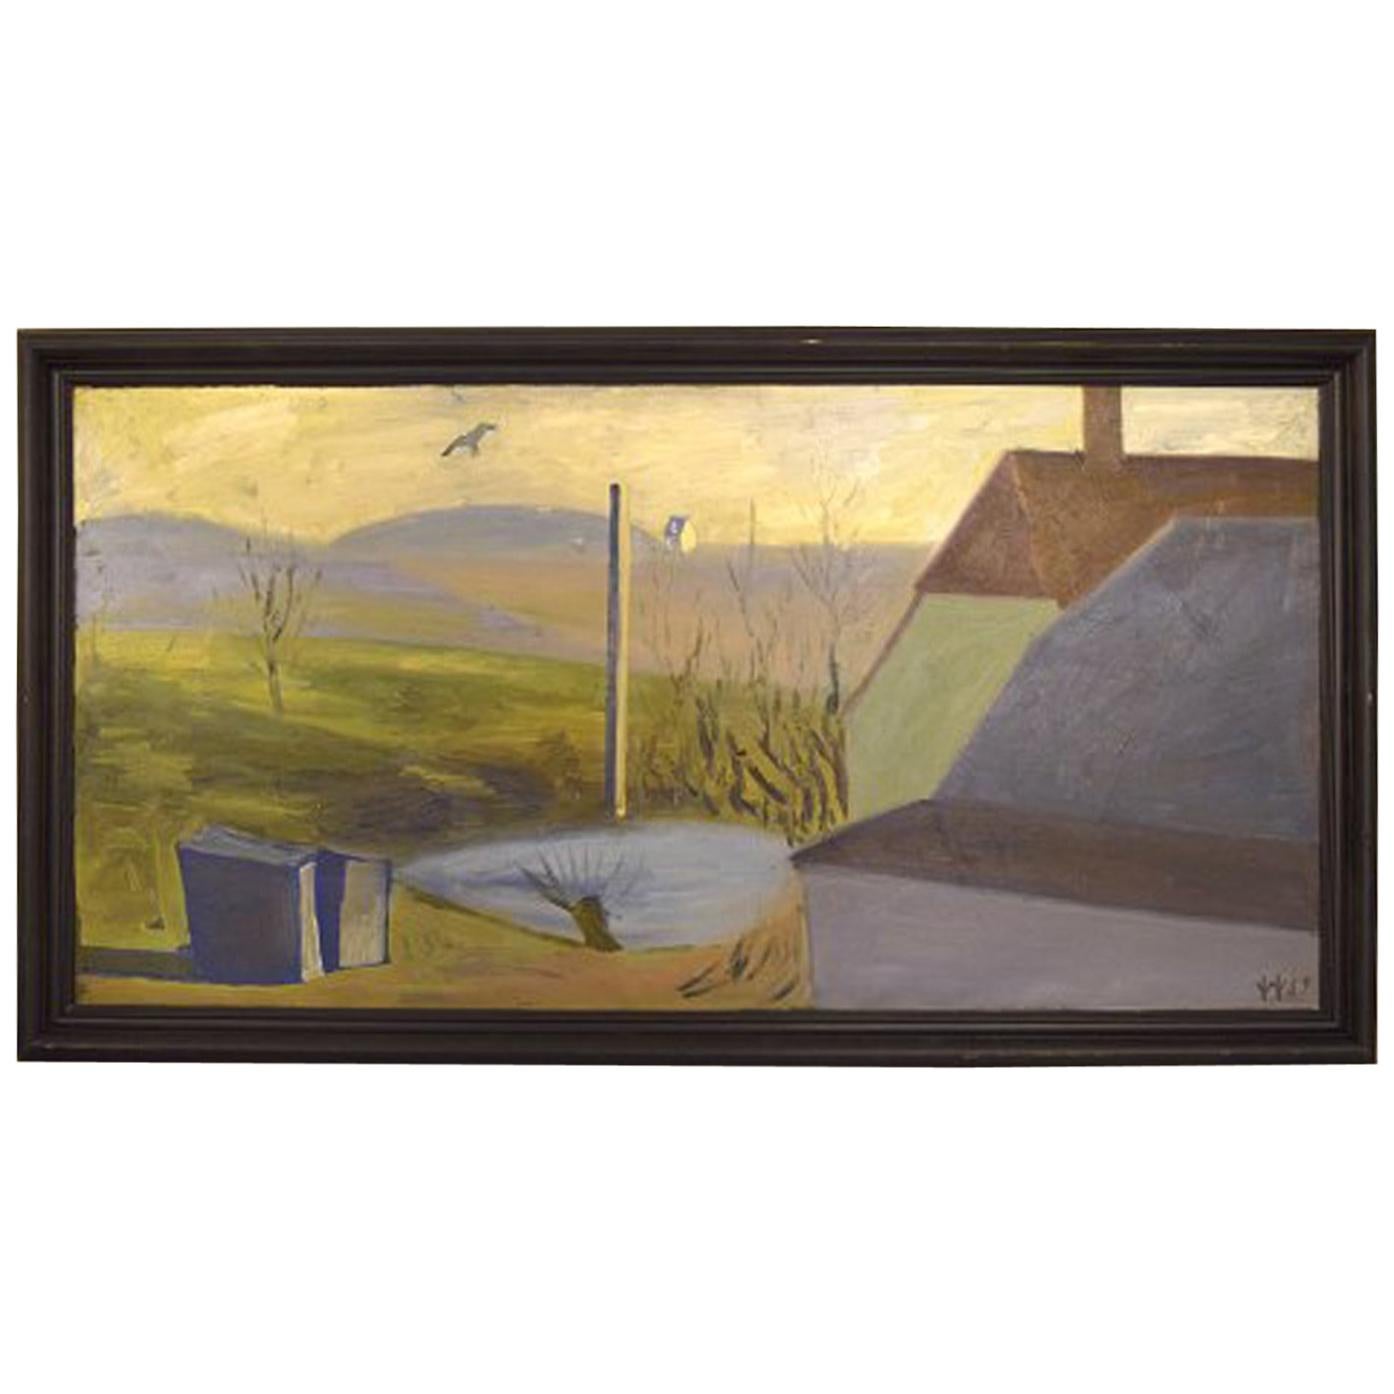 William Hansen, dänischer Maler, Öl auf Leinwand. Hilly-Landschaft, 1957